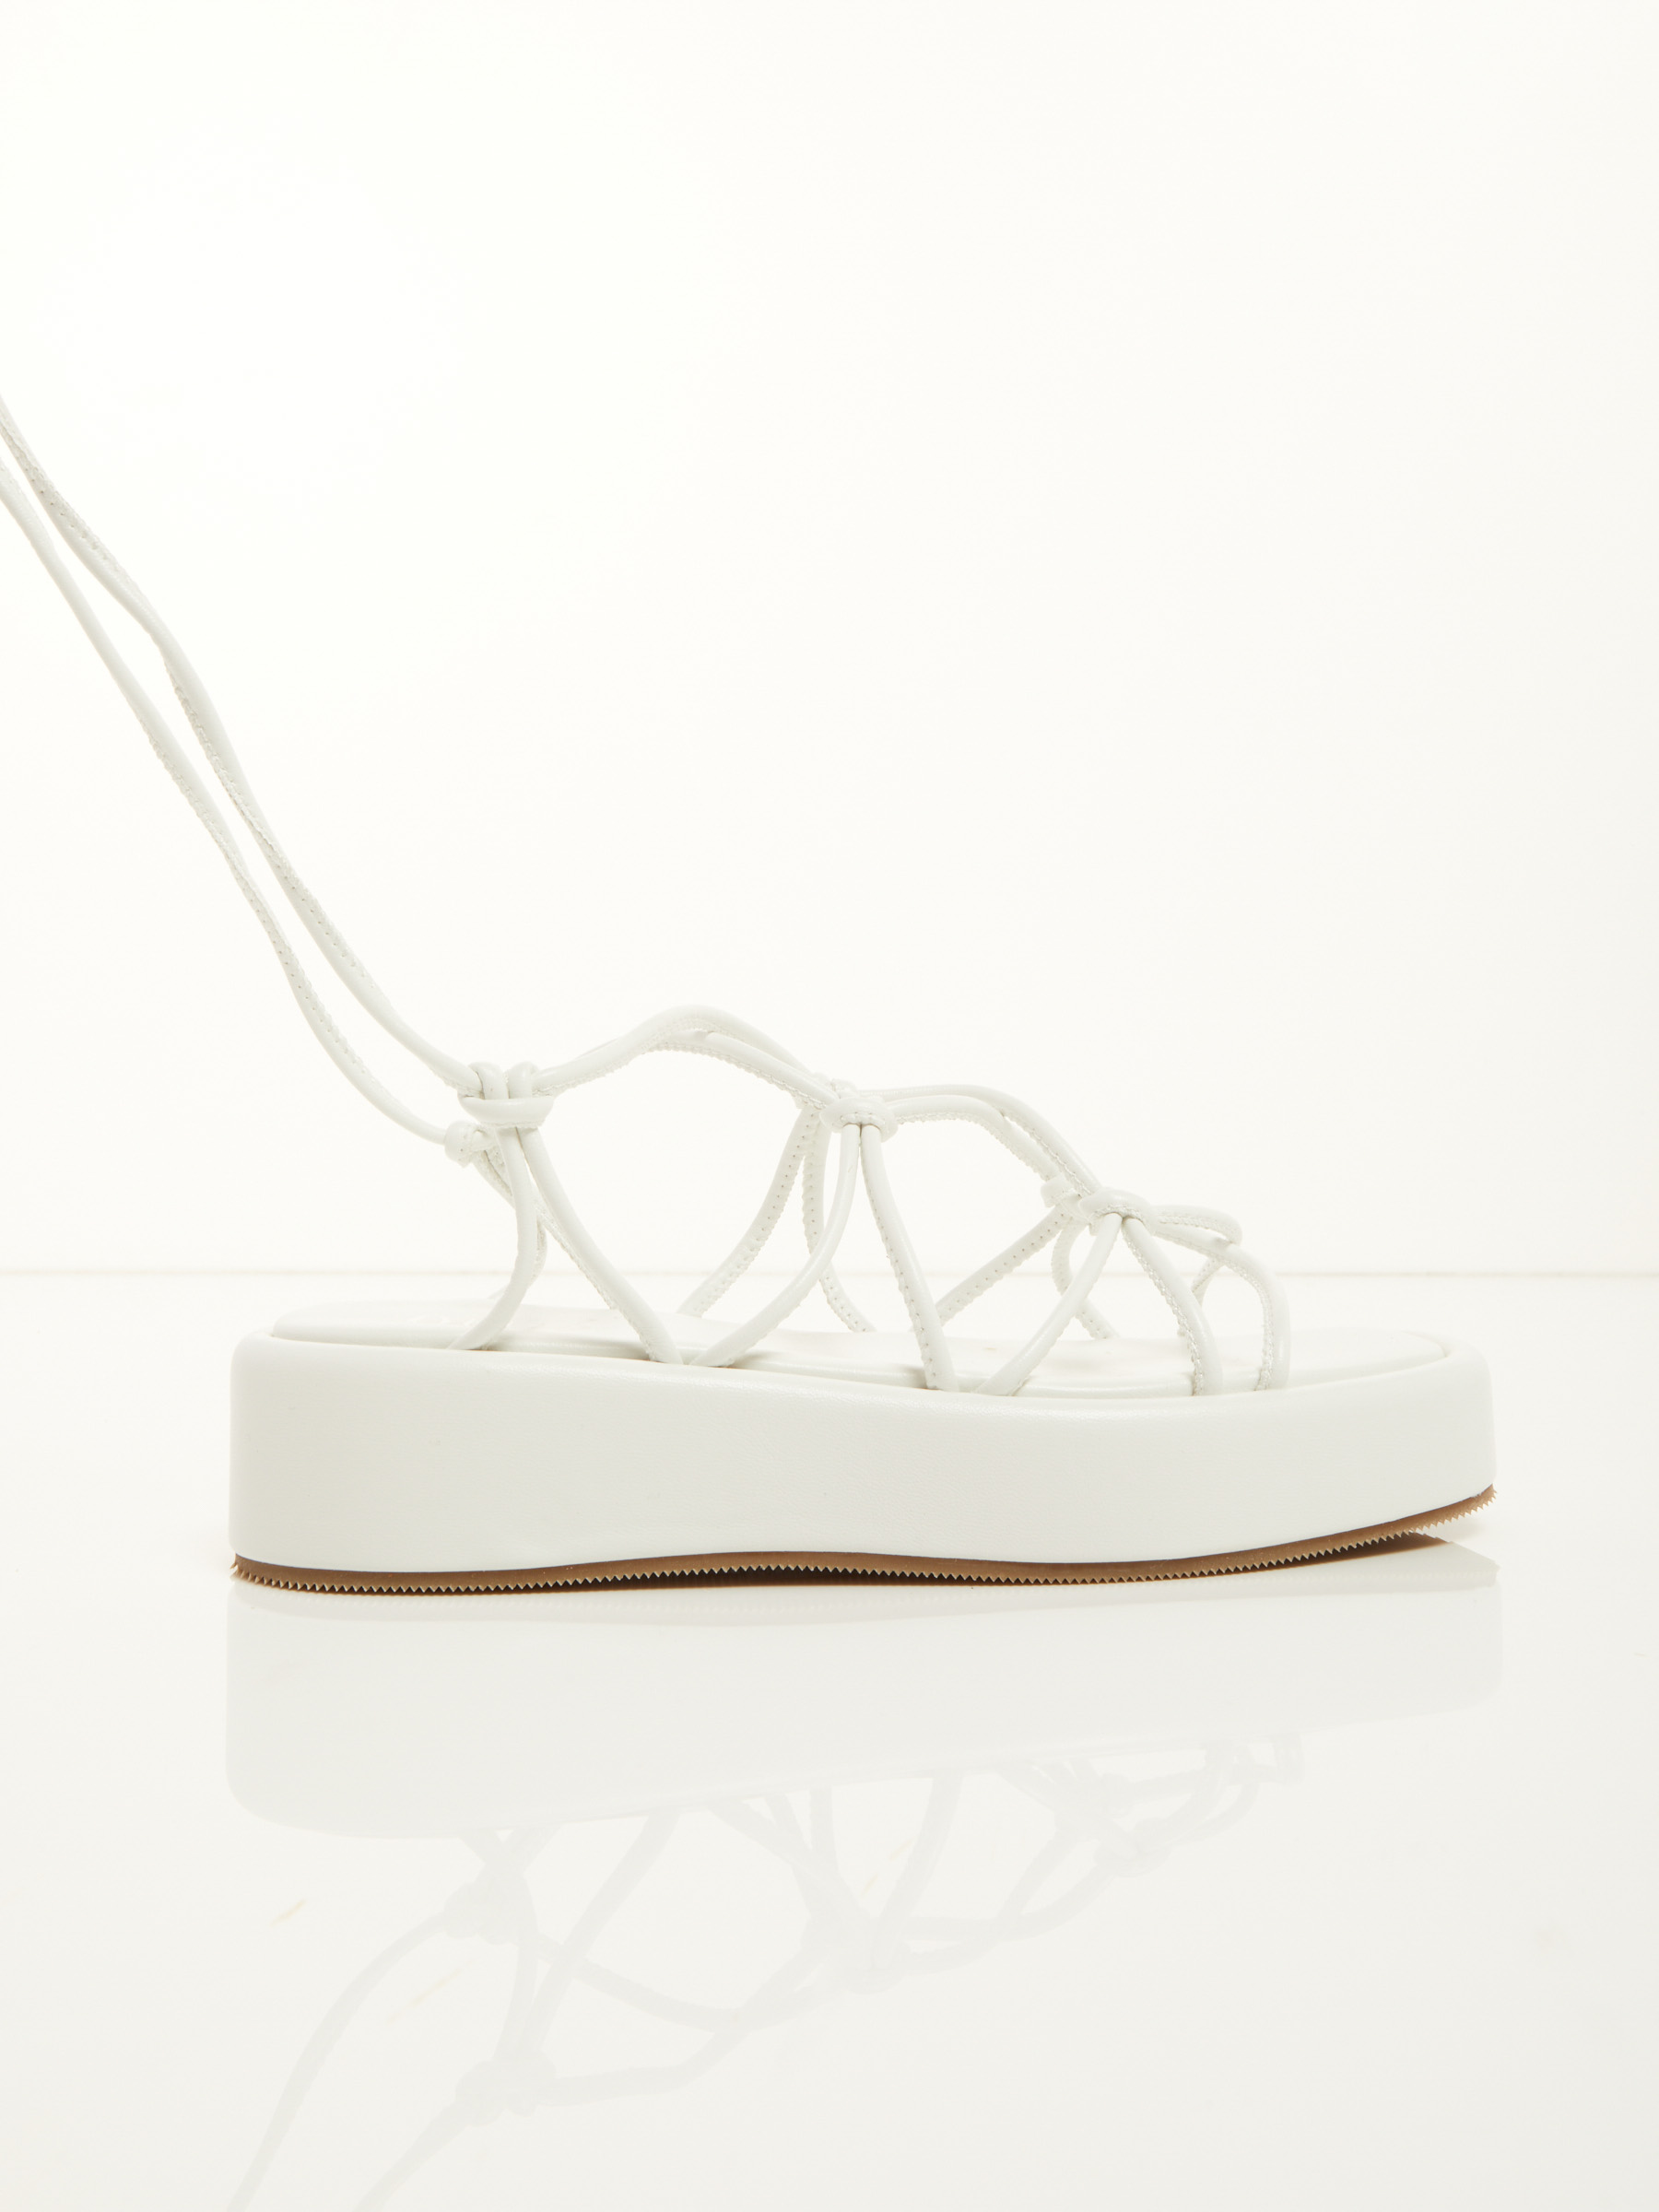 greek flat sandals